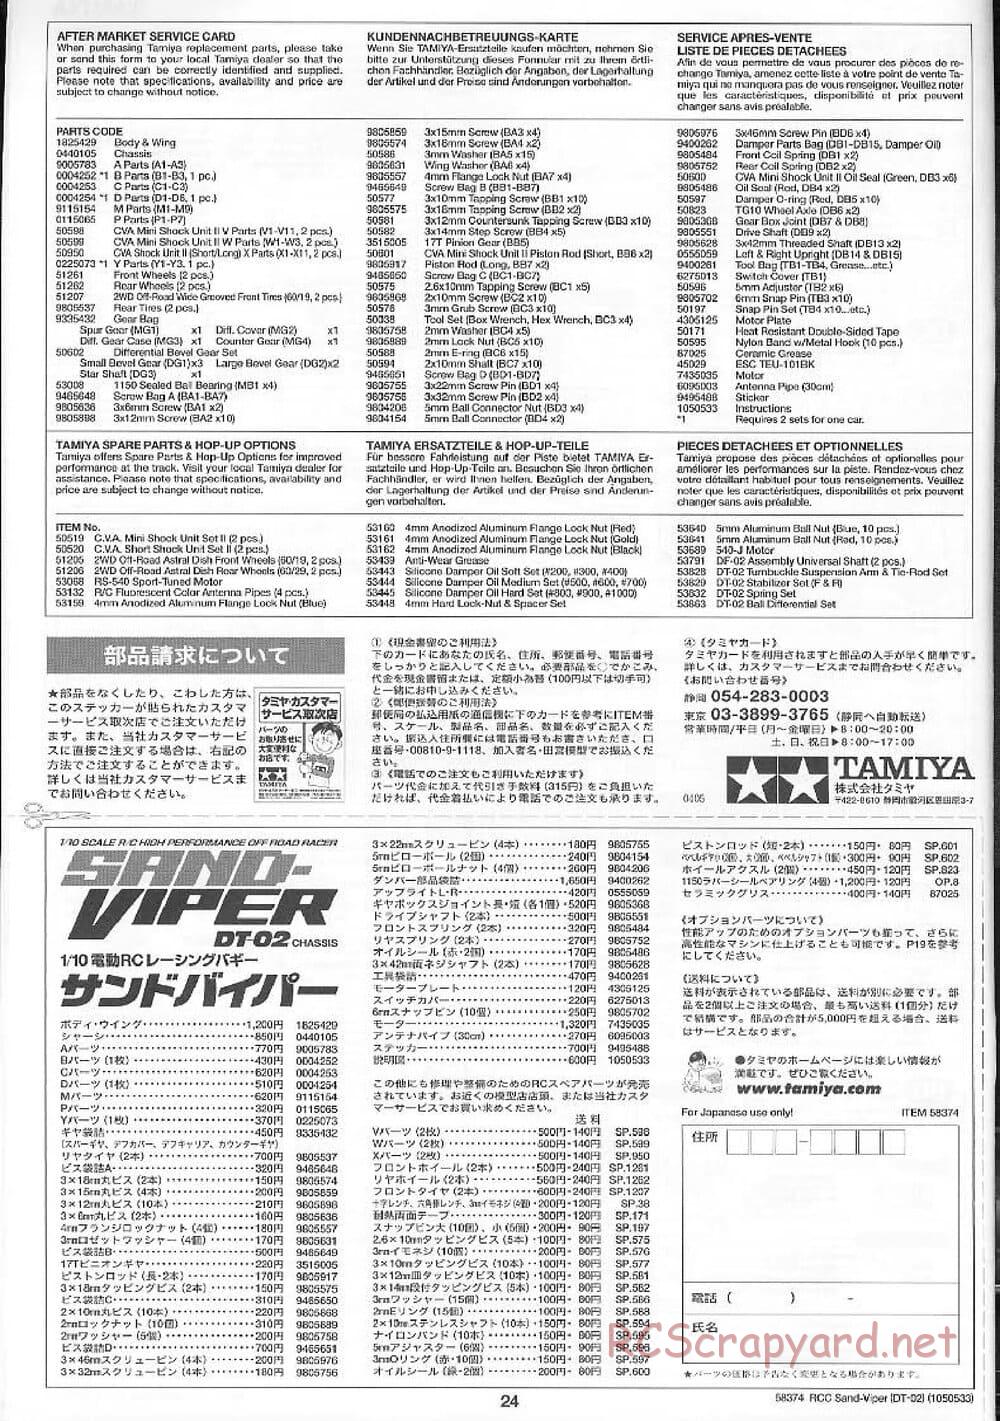 Tamiya - Sand Viper Chassis - Manual - Page 24